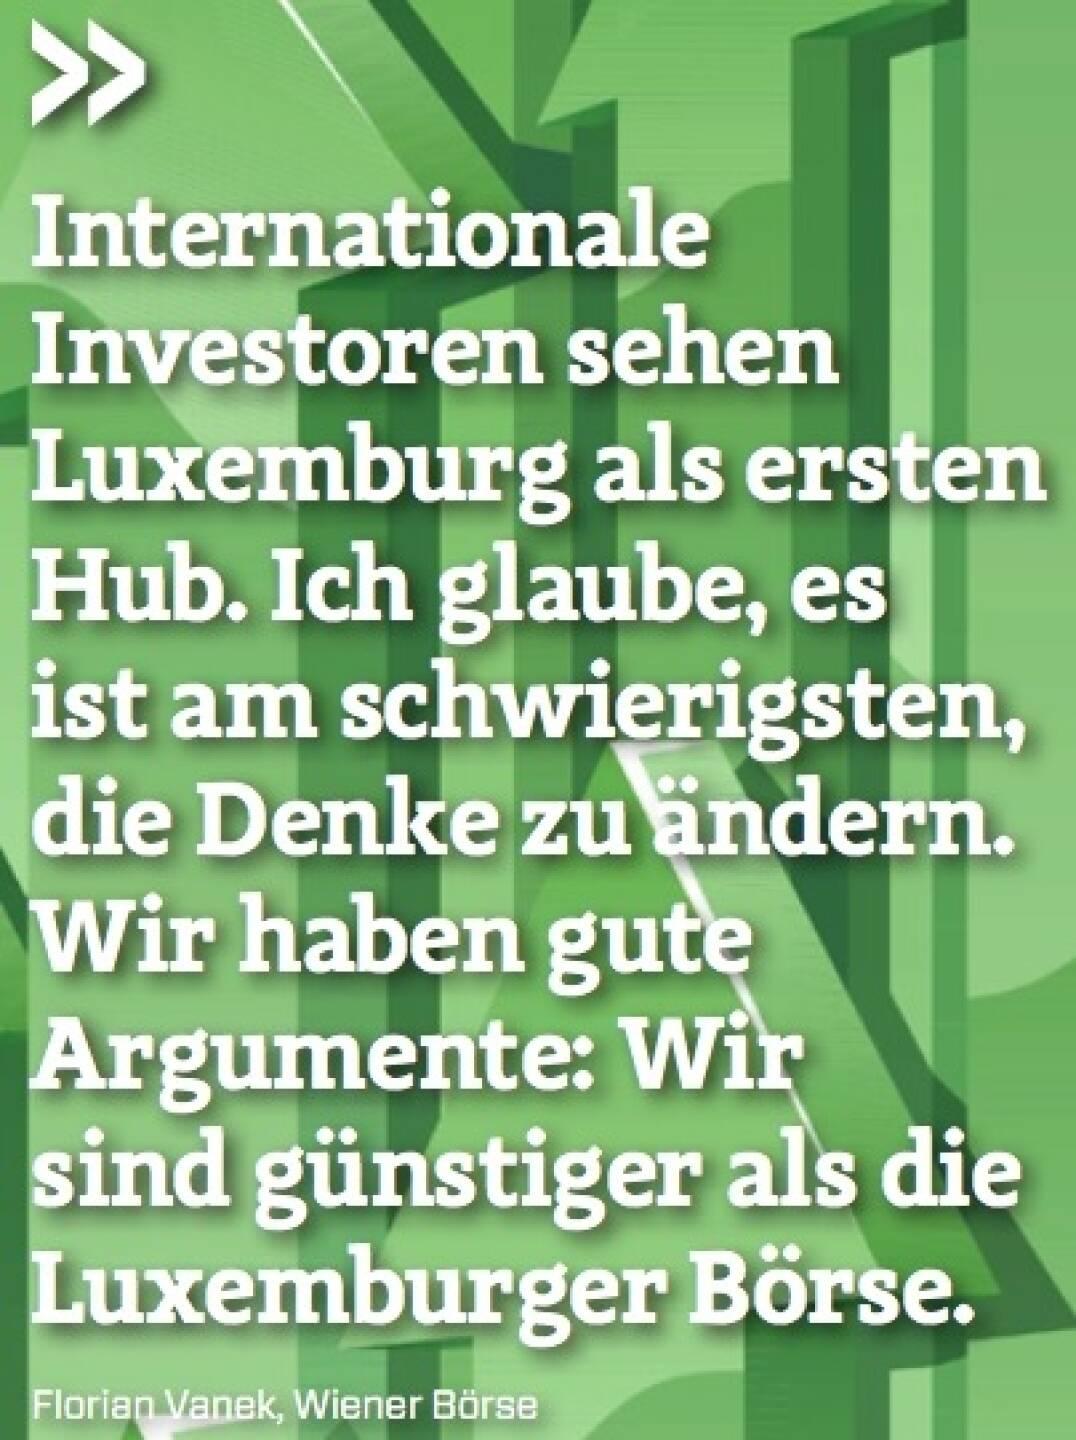 Internationale Investoren sehen Luxemburg als ersten Hub. Ich glaube, es ist am schwierigsten, die Denke zu ändern. Wir haben gute Argumente: Wir sind günstiger als die Luxemburger Börse. - Florian Vanek (Wiener Börse)